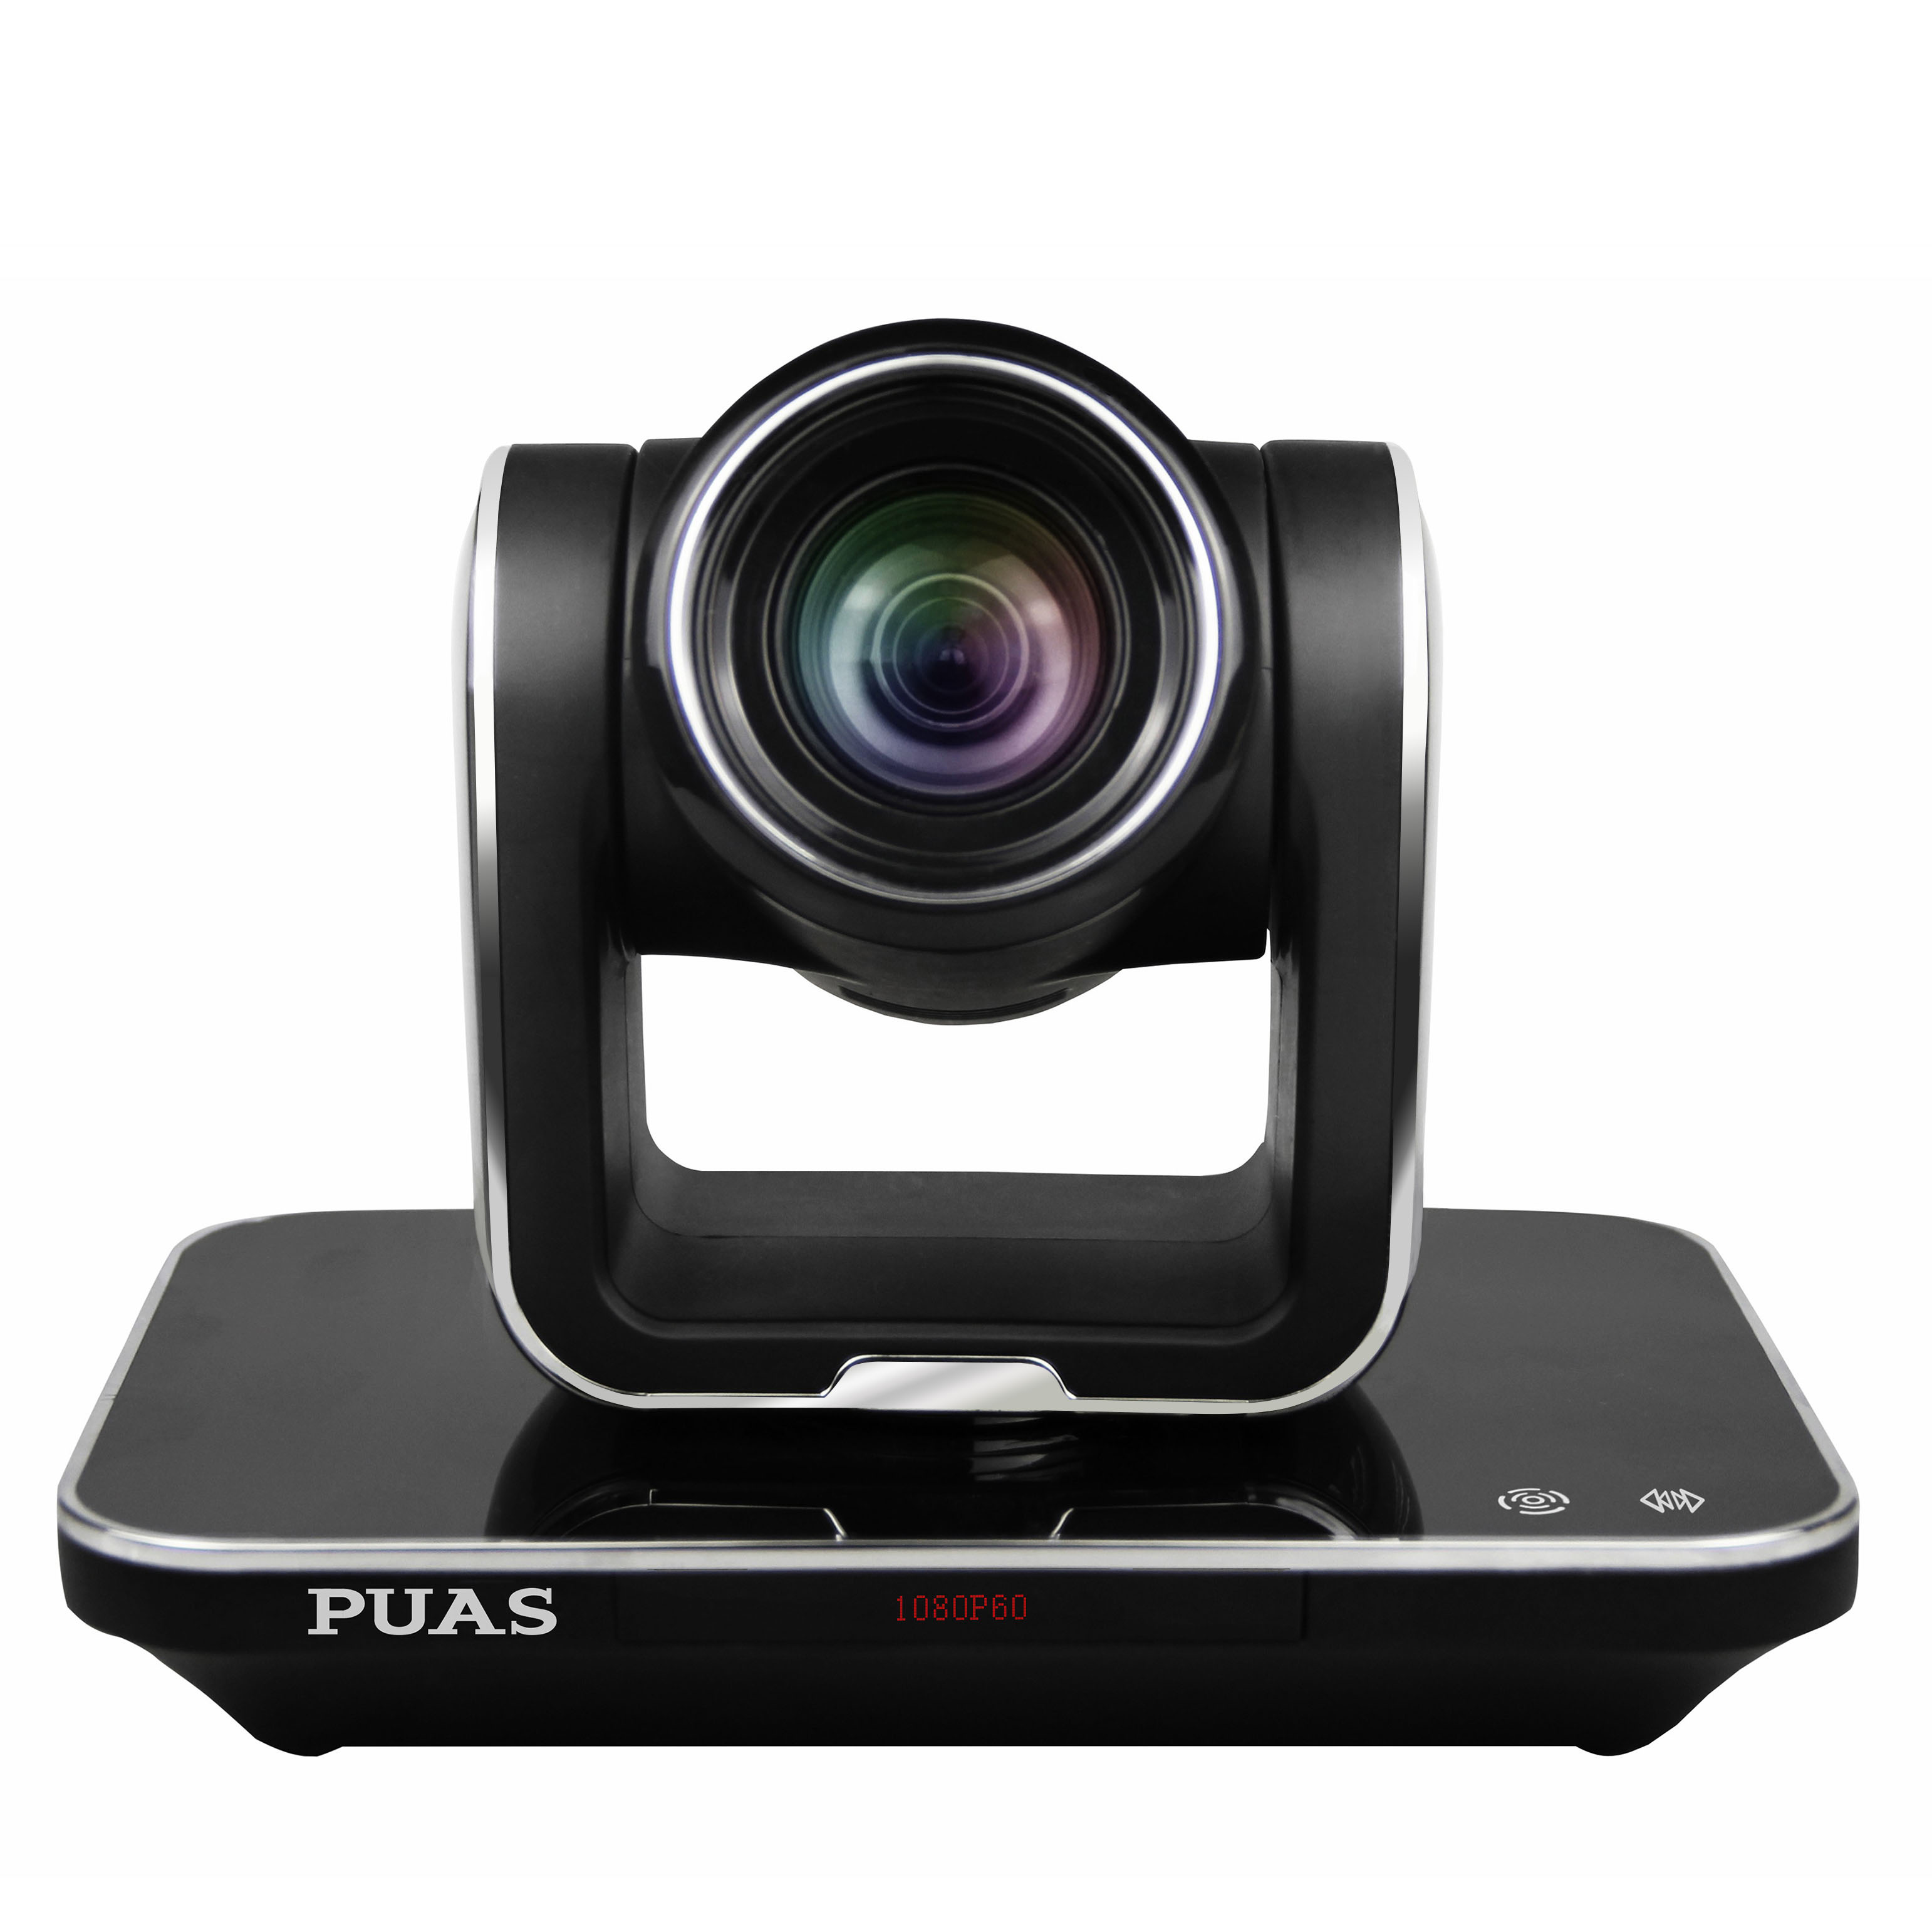 PUS-U203 USB2.0高清彩色摄像机 - 深圳市普奥视实业有限公司